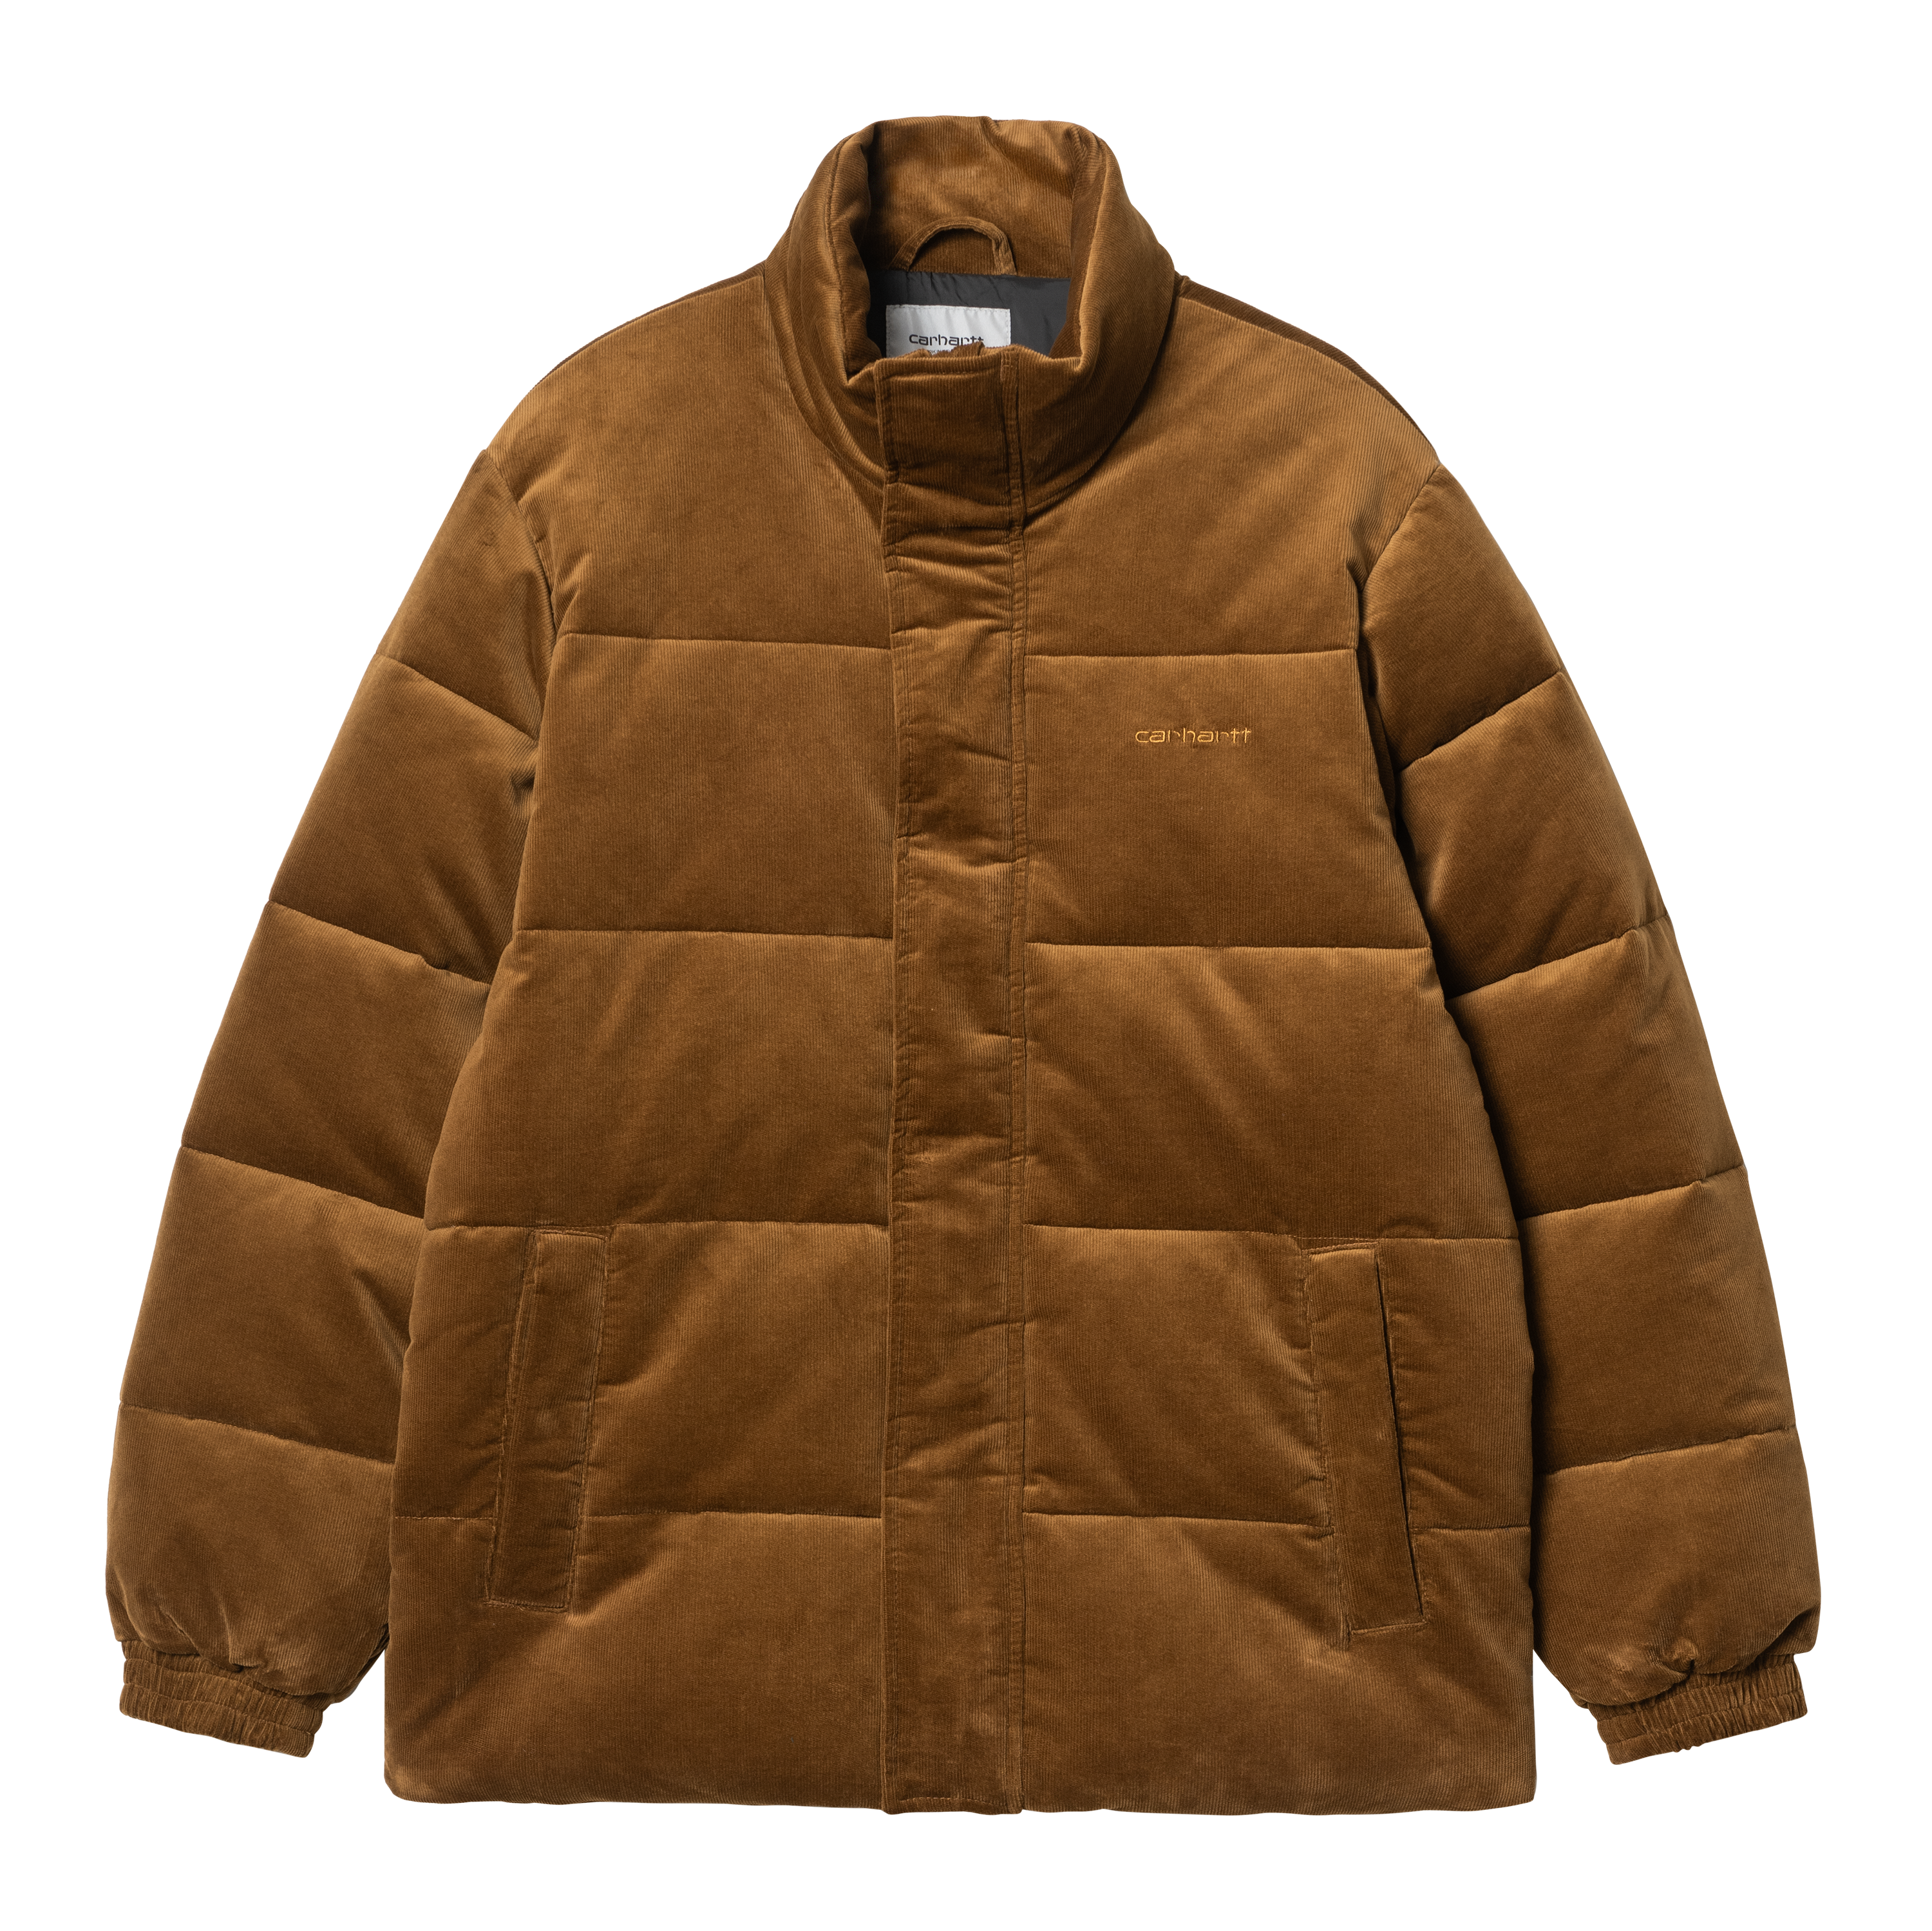 Carhartt WIP Layton Jacket in Marrone